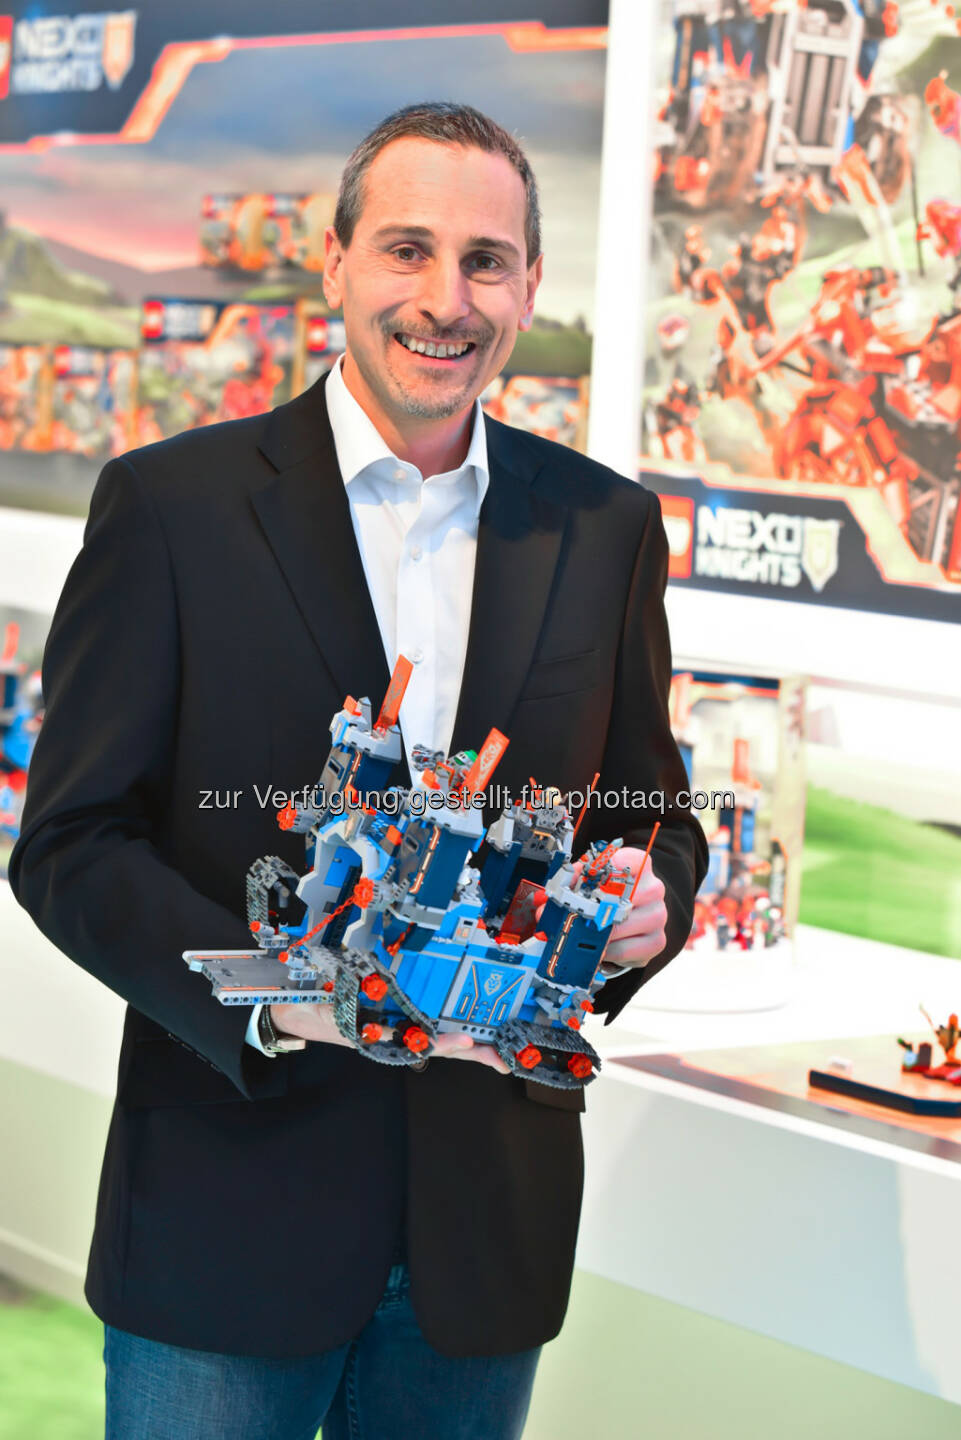 Frédéric Lehmann, GF Lego GmbH : Nach erfolgreichem Geschäftsjahr setzt die Lego GmbH 2016 auf vielseitigen Bauspaß mit neuen digitalen Spielerlebnissen : Fotocredit: Lego GmbH